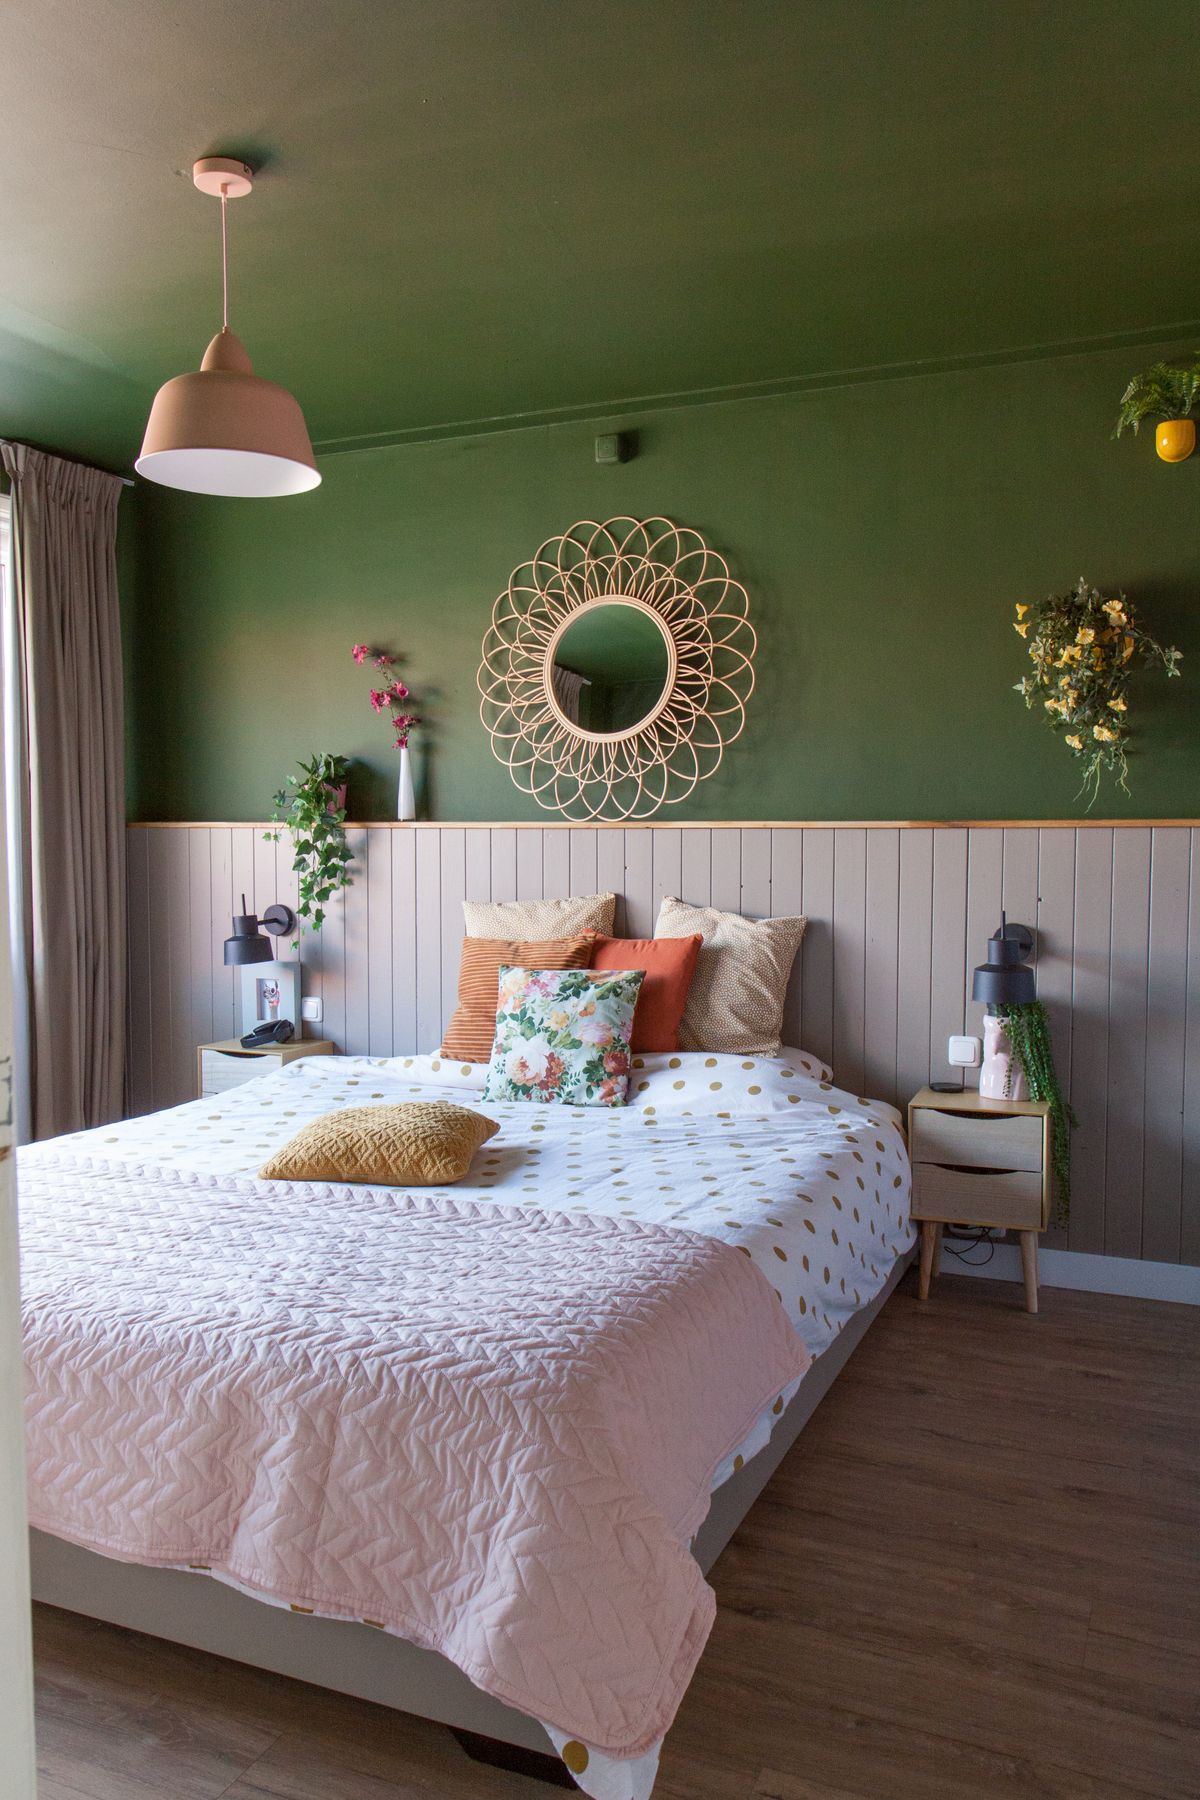 Groen plafond in de slaapkamer, plafond in dezelfde kleur als de muur